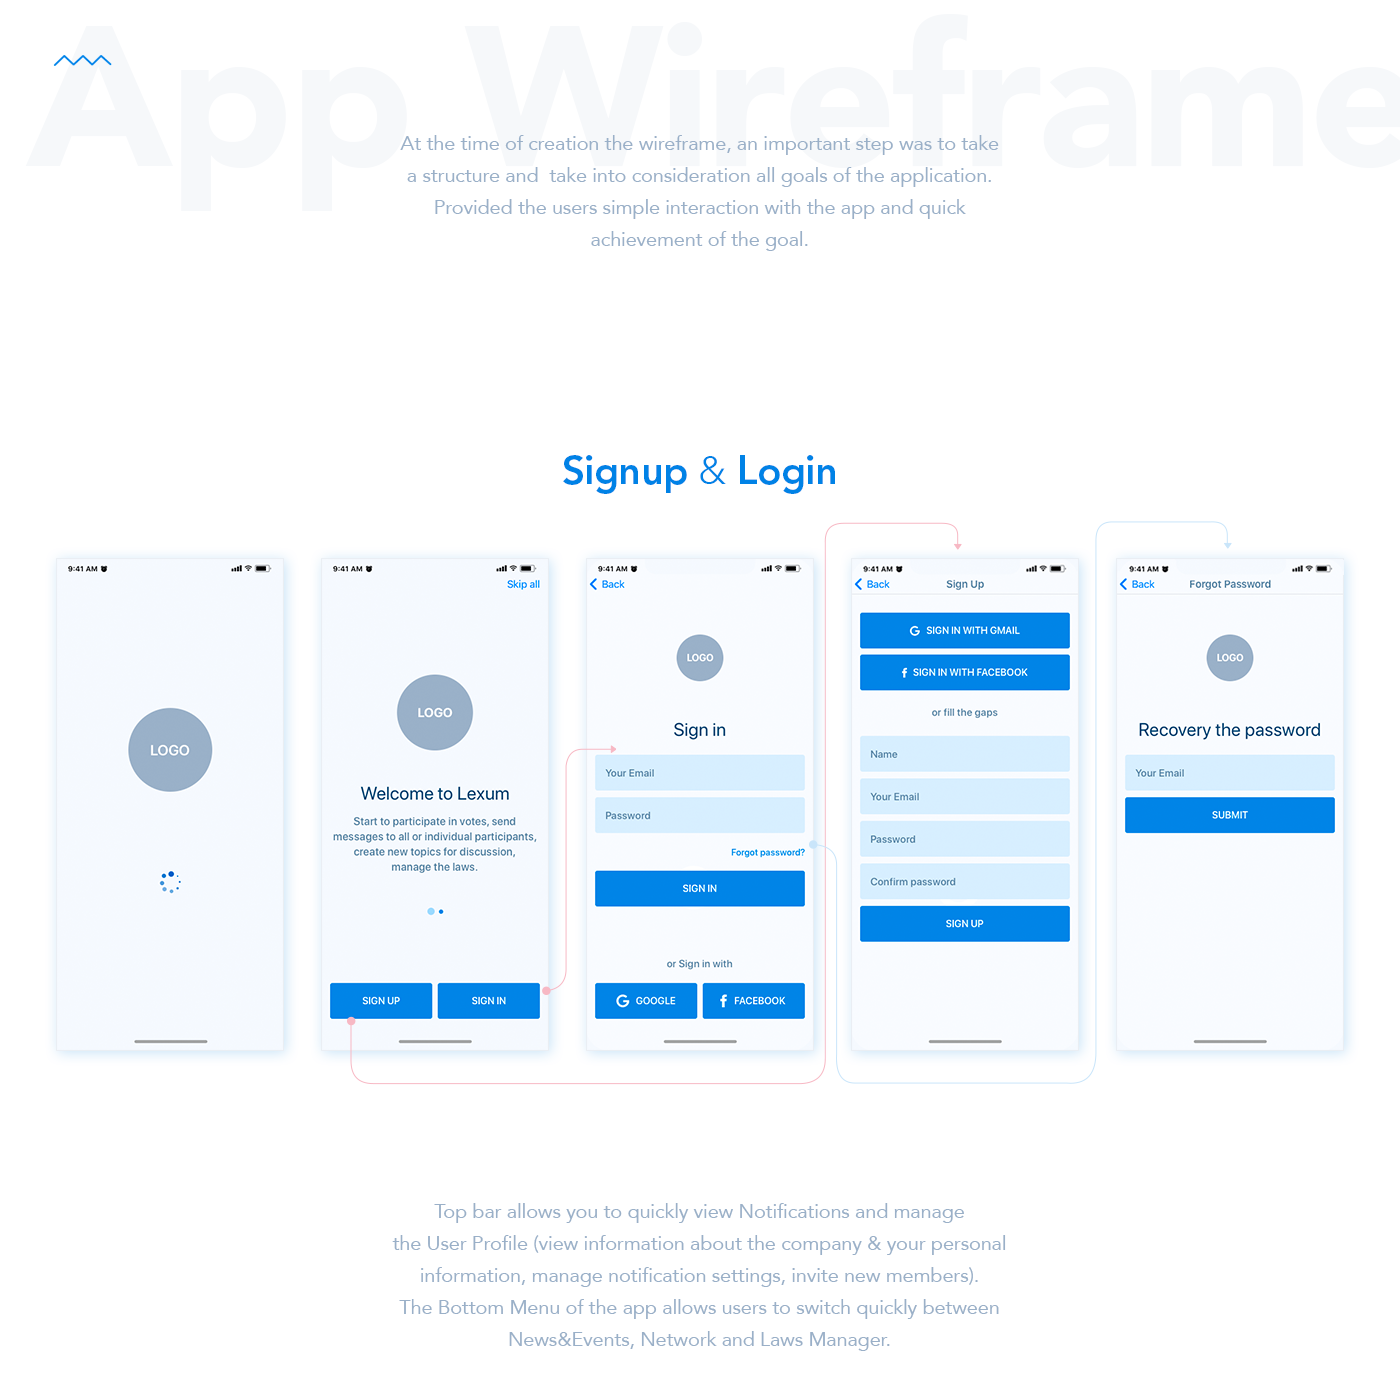 wireframes web application web wireframe Appwireframe social network app application law law manager